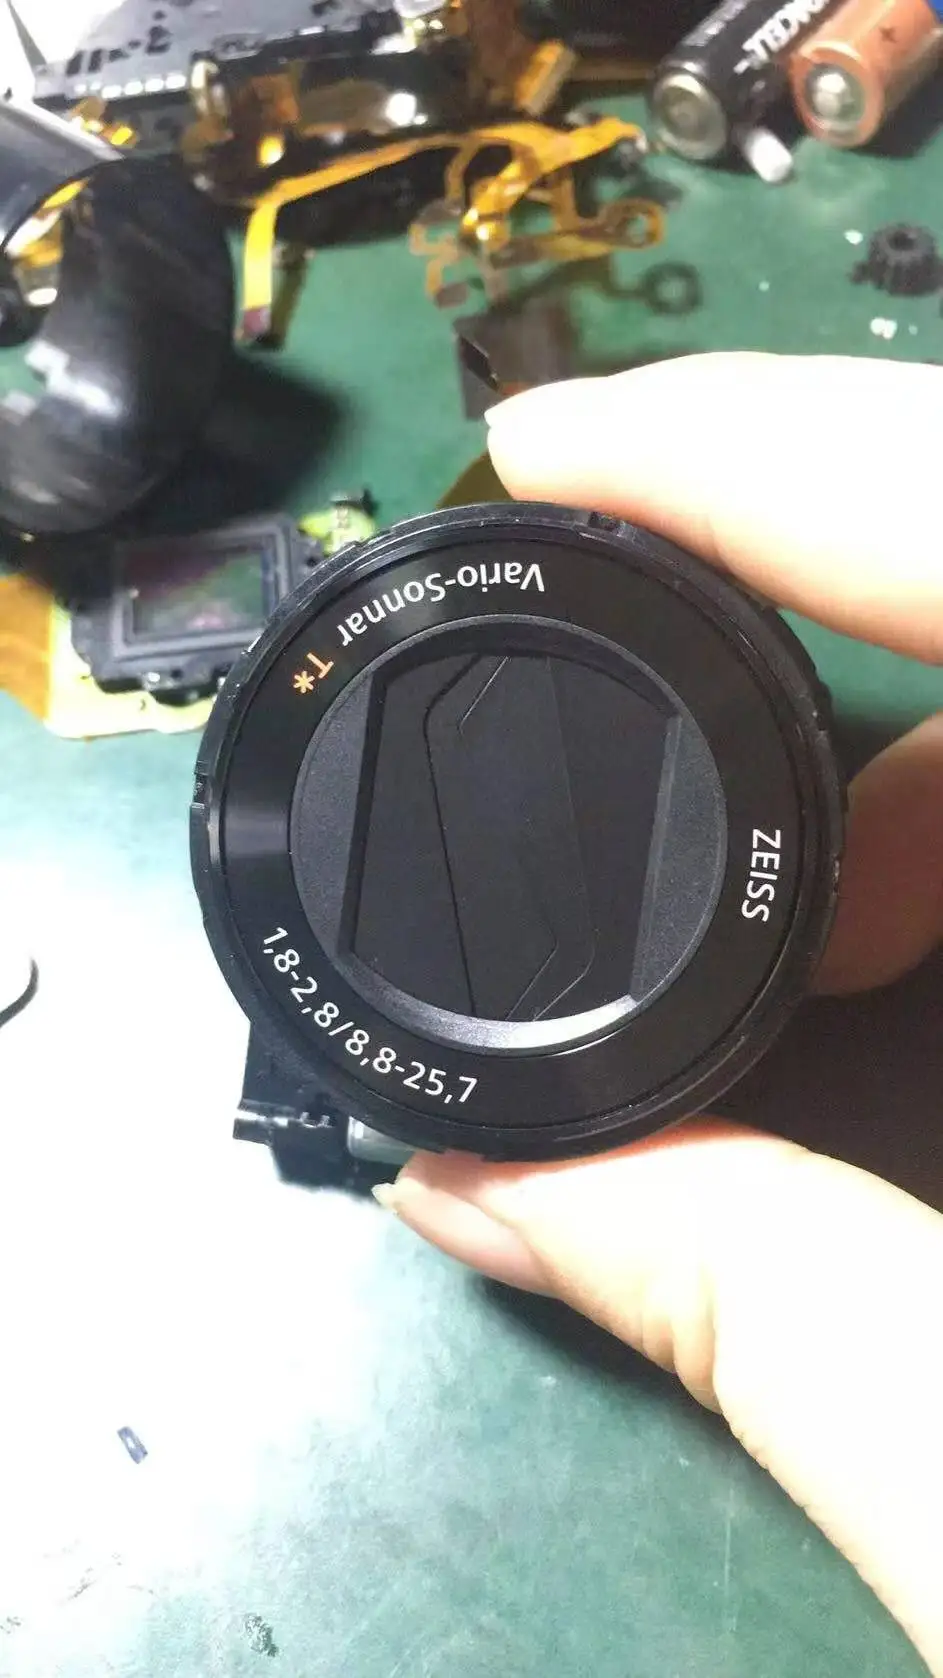 

NEW For Sony RX100 III / IV / V Cyber-shot DSC-RX100 M3 / M4 / M5 RX100III RX100IV RX100V Zoom Lens Unit Camera Repair Part